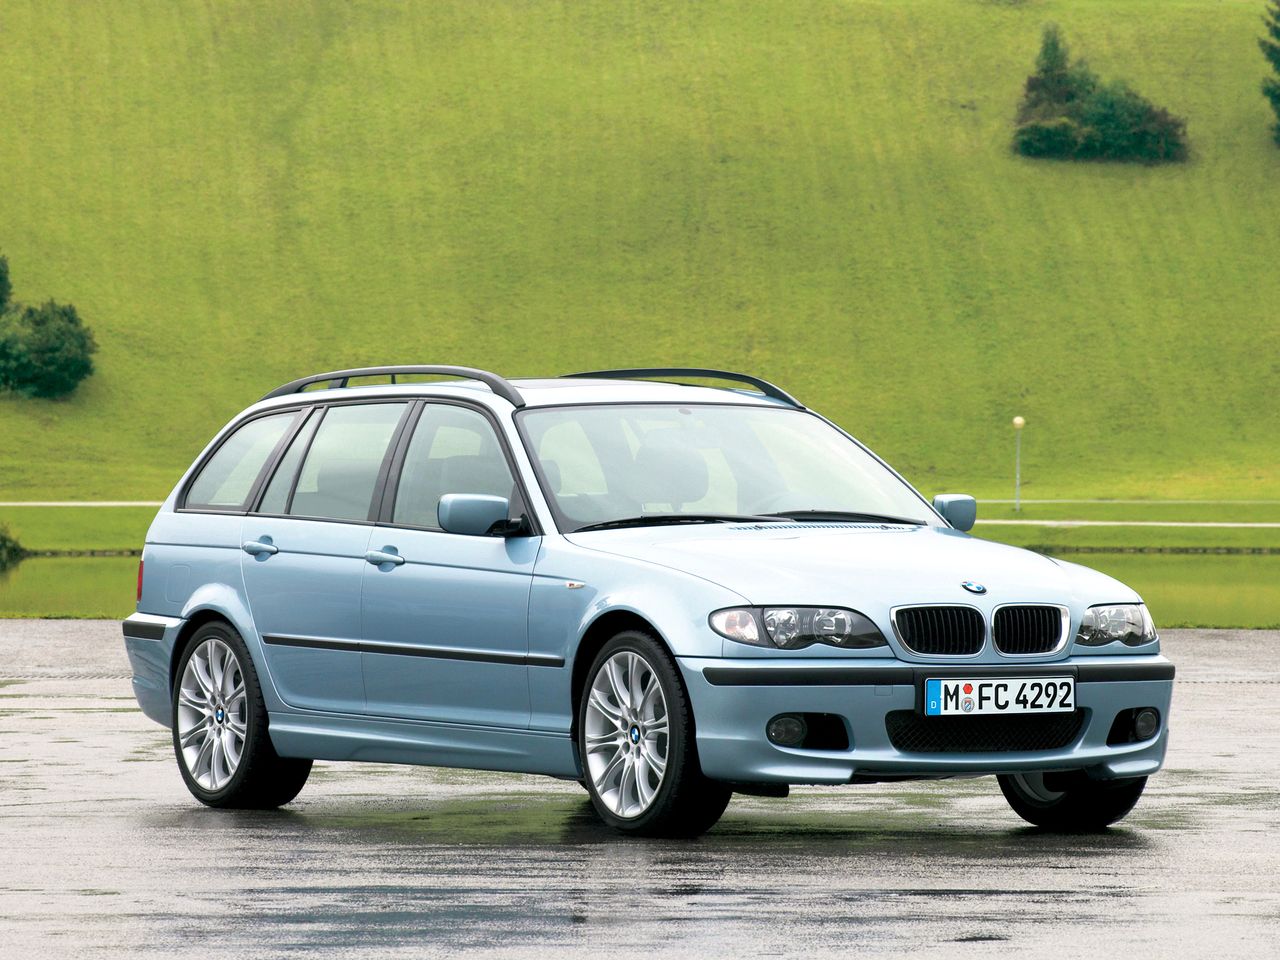 BMW 320d - dawniej bardzo poszukiwany samochód używany, dziś coraz mniej. Jednak ładne egzemplarze i tak sprzedają się na pniu.